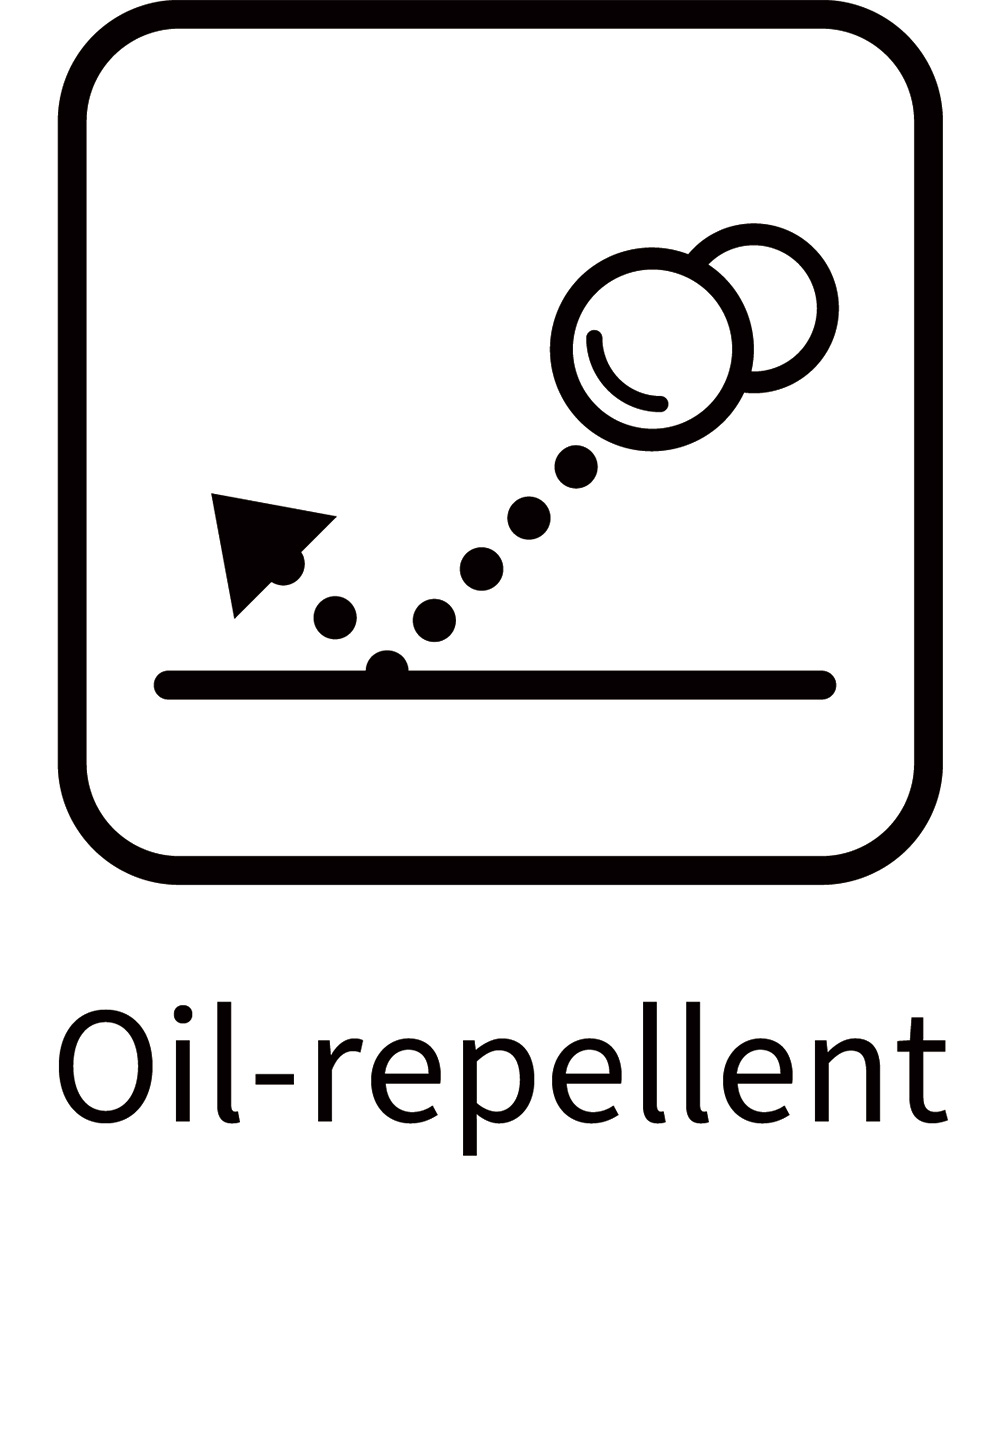 Oil-repellent